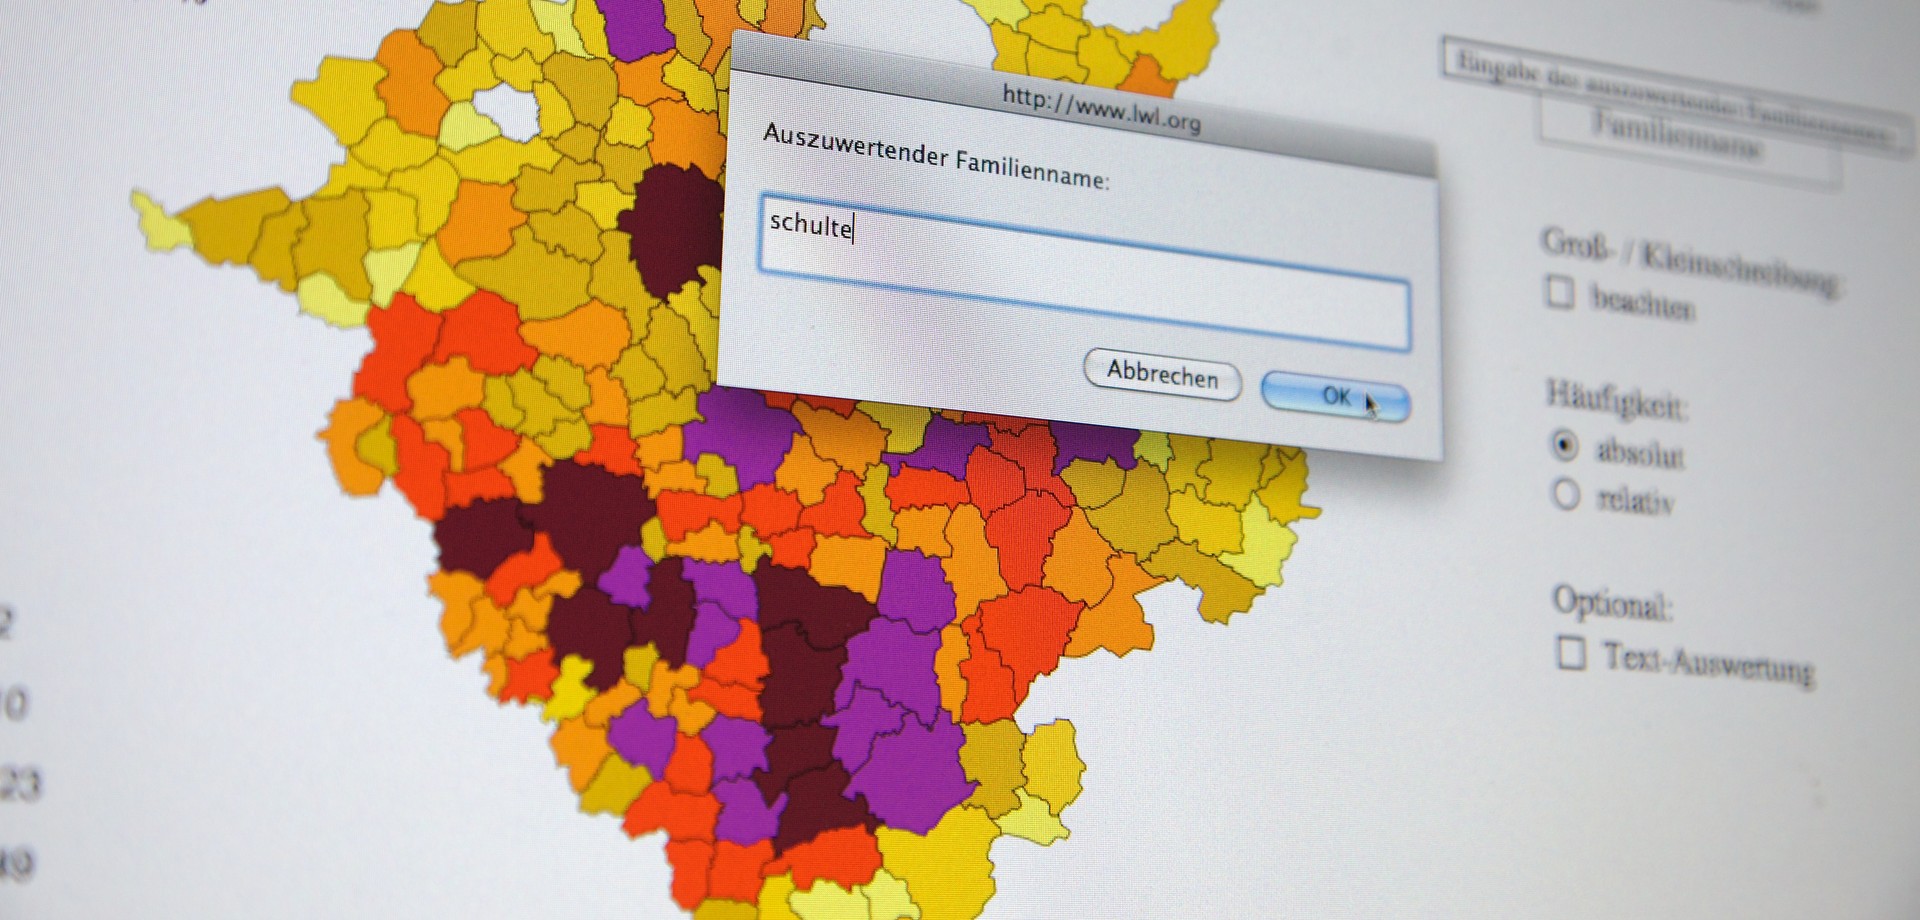 Westfalenkarte des Internetportals Familiennamengeographie, die die Verbreitung für den Name "Schulte" anzeigt